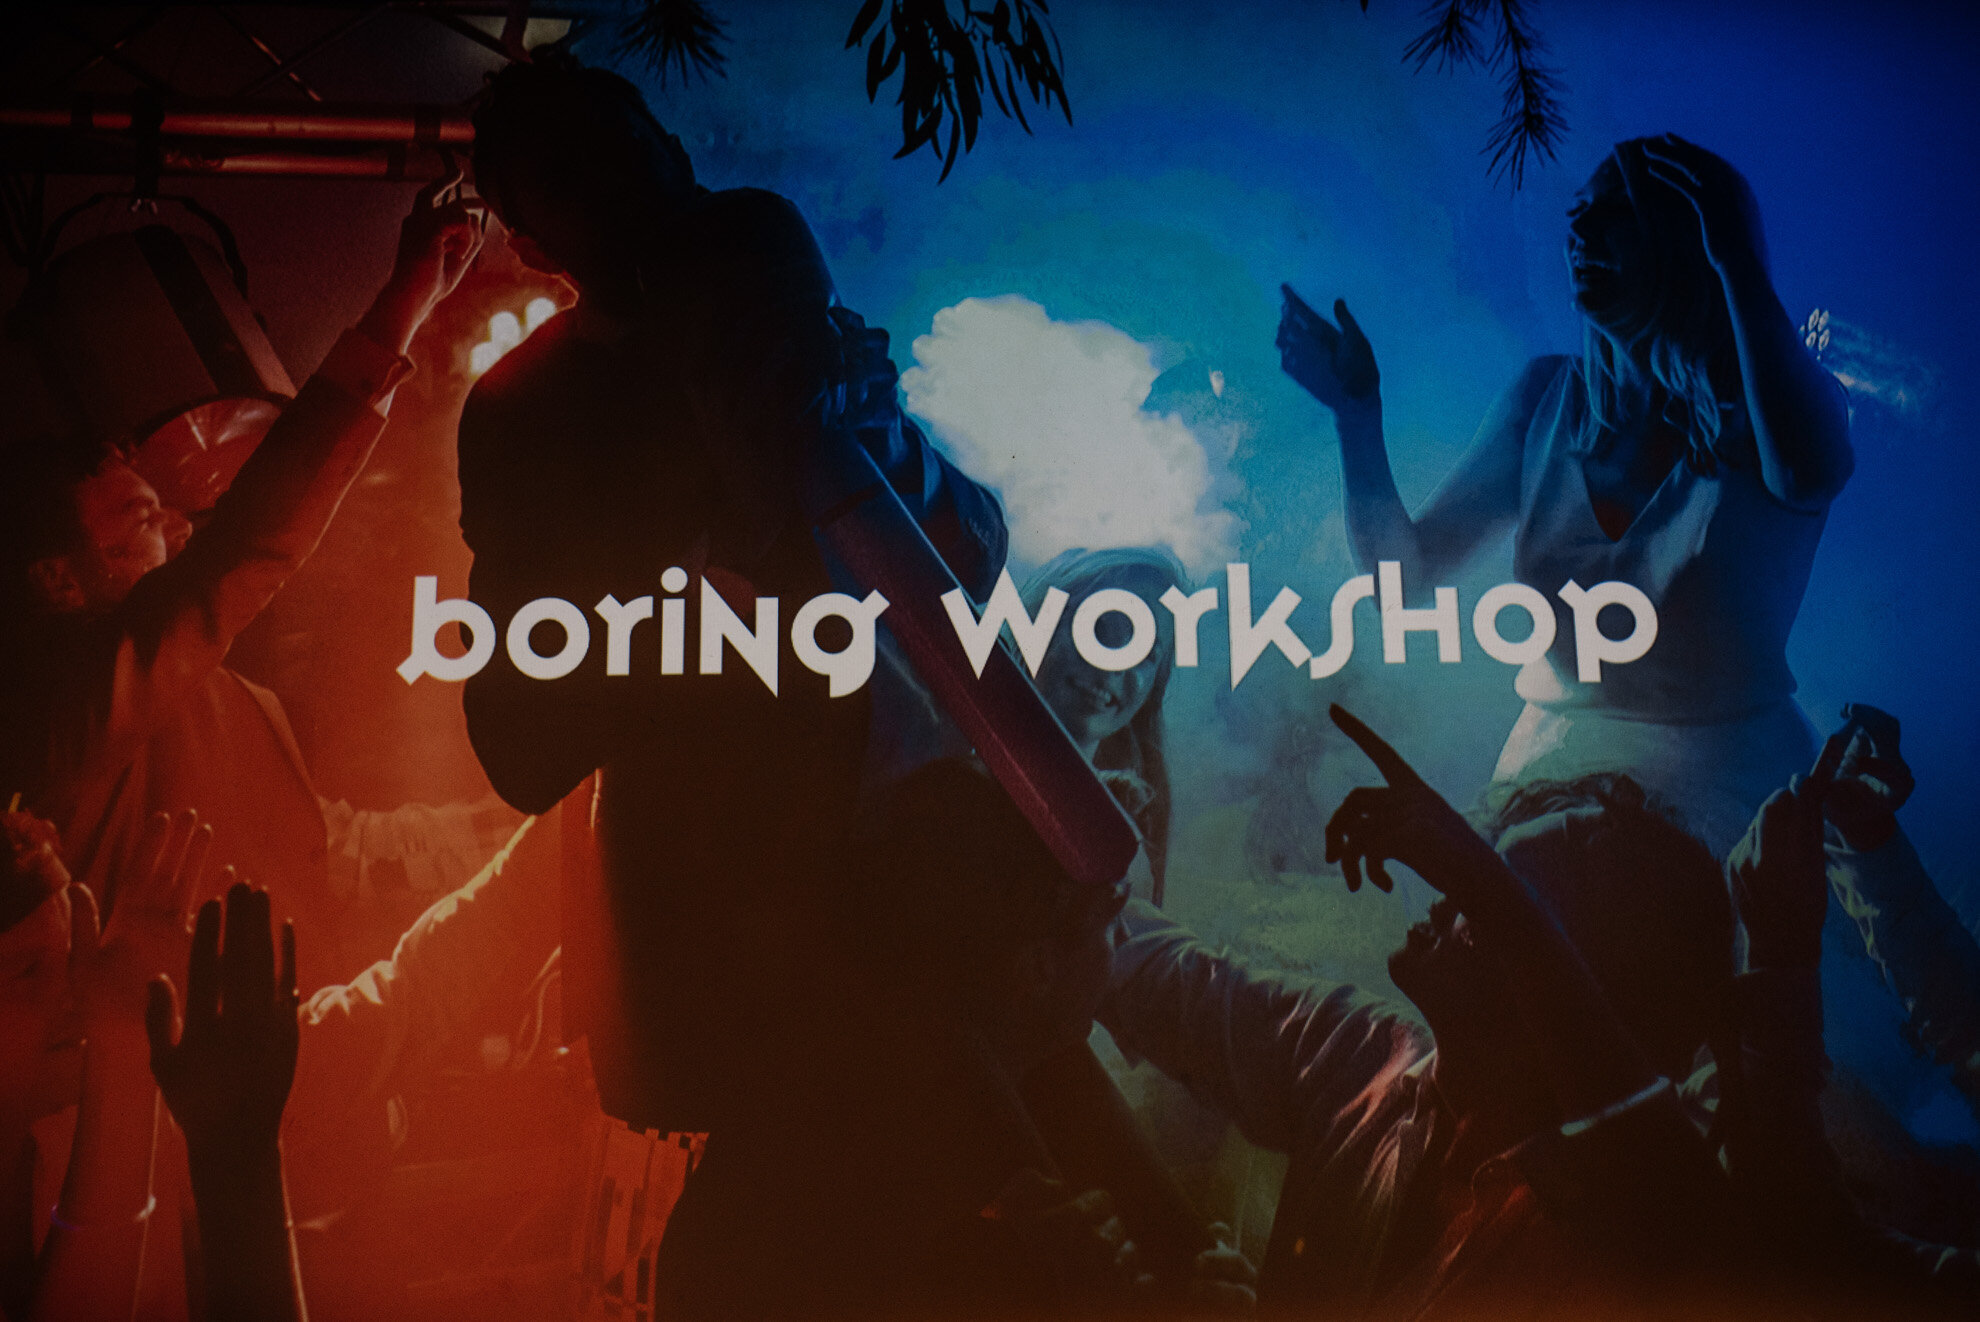 boring workshop 0182.JPG